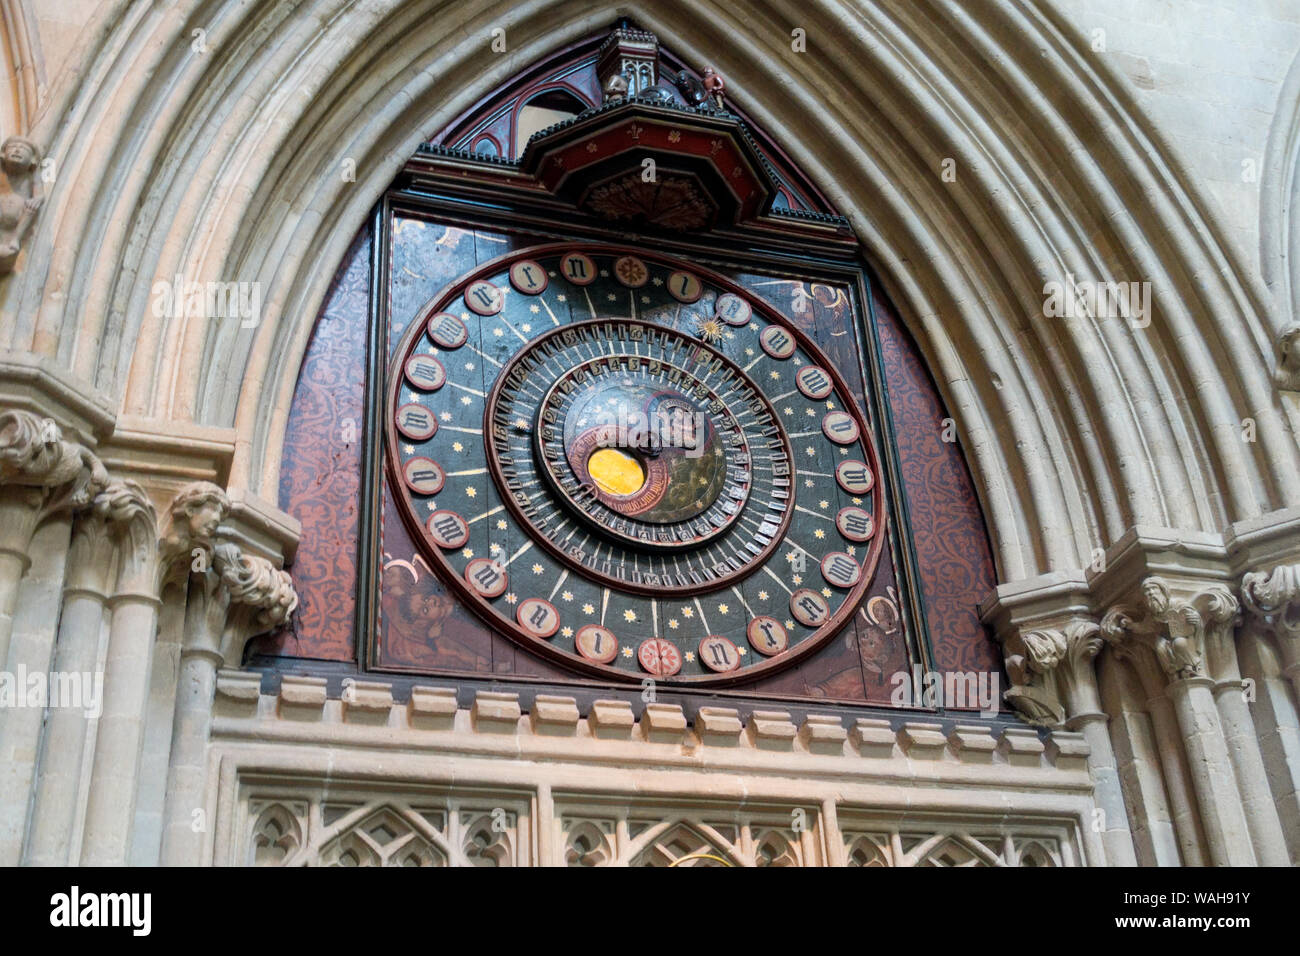 Die berühmte astronomische Uhr in der Kathedrale von Wells, Wells, Somerset, England, UK. Stockfoto